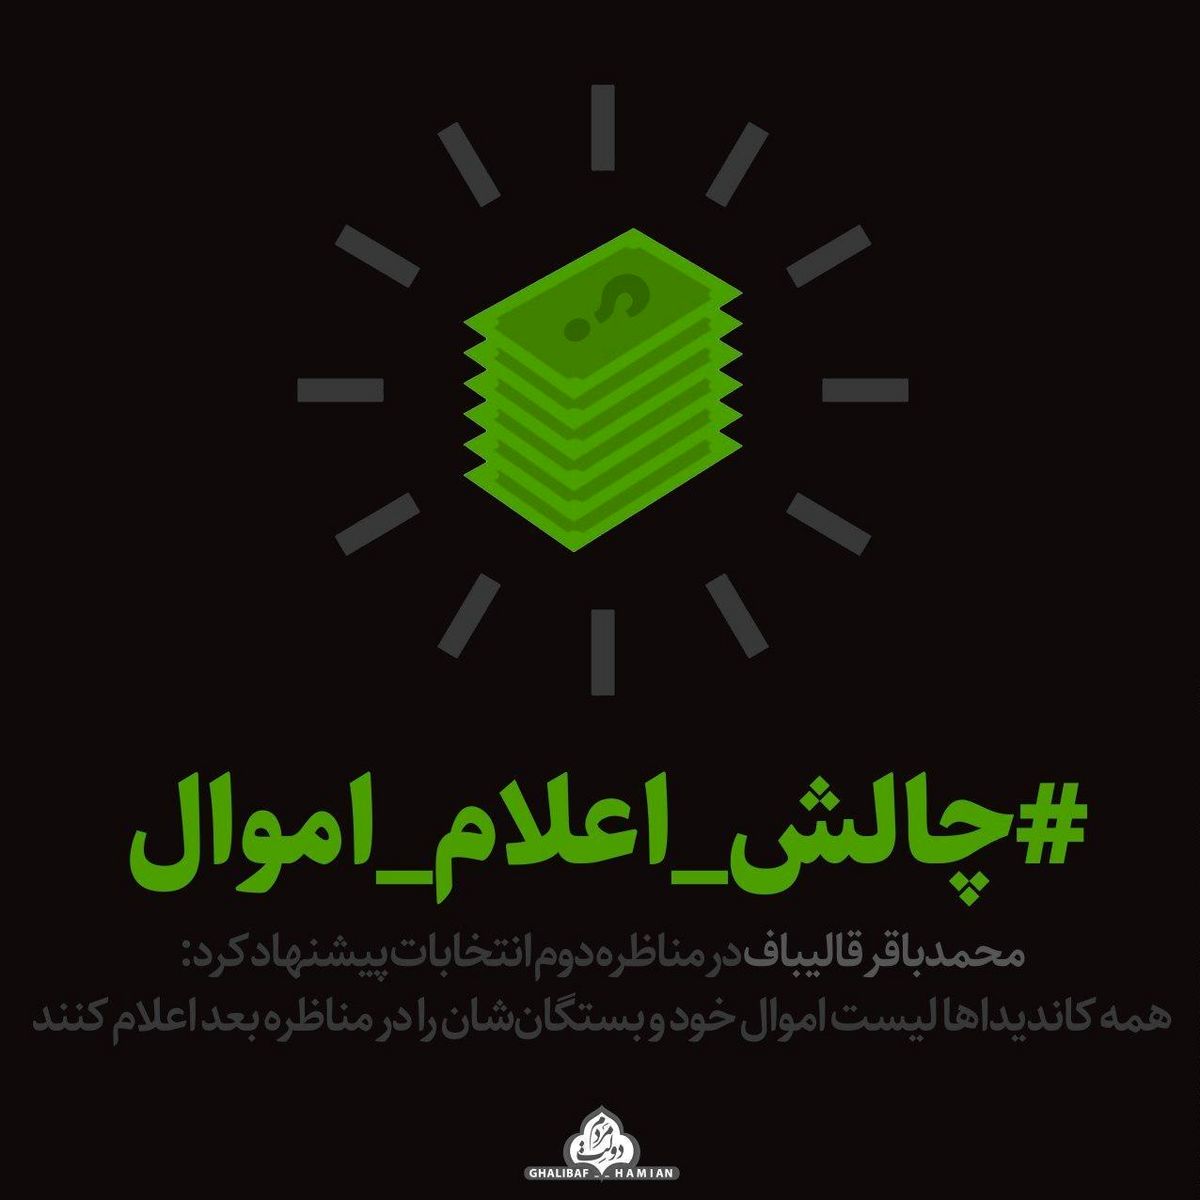 کمپین "#چالش_اعلام_اموال" اعلام موجودیت کرد